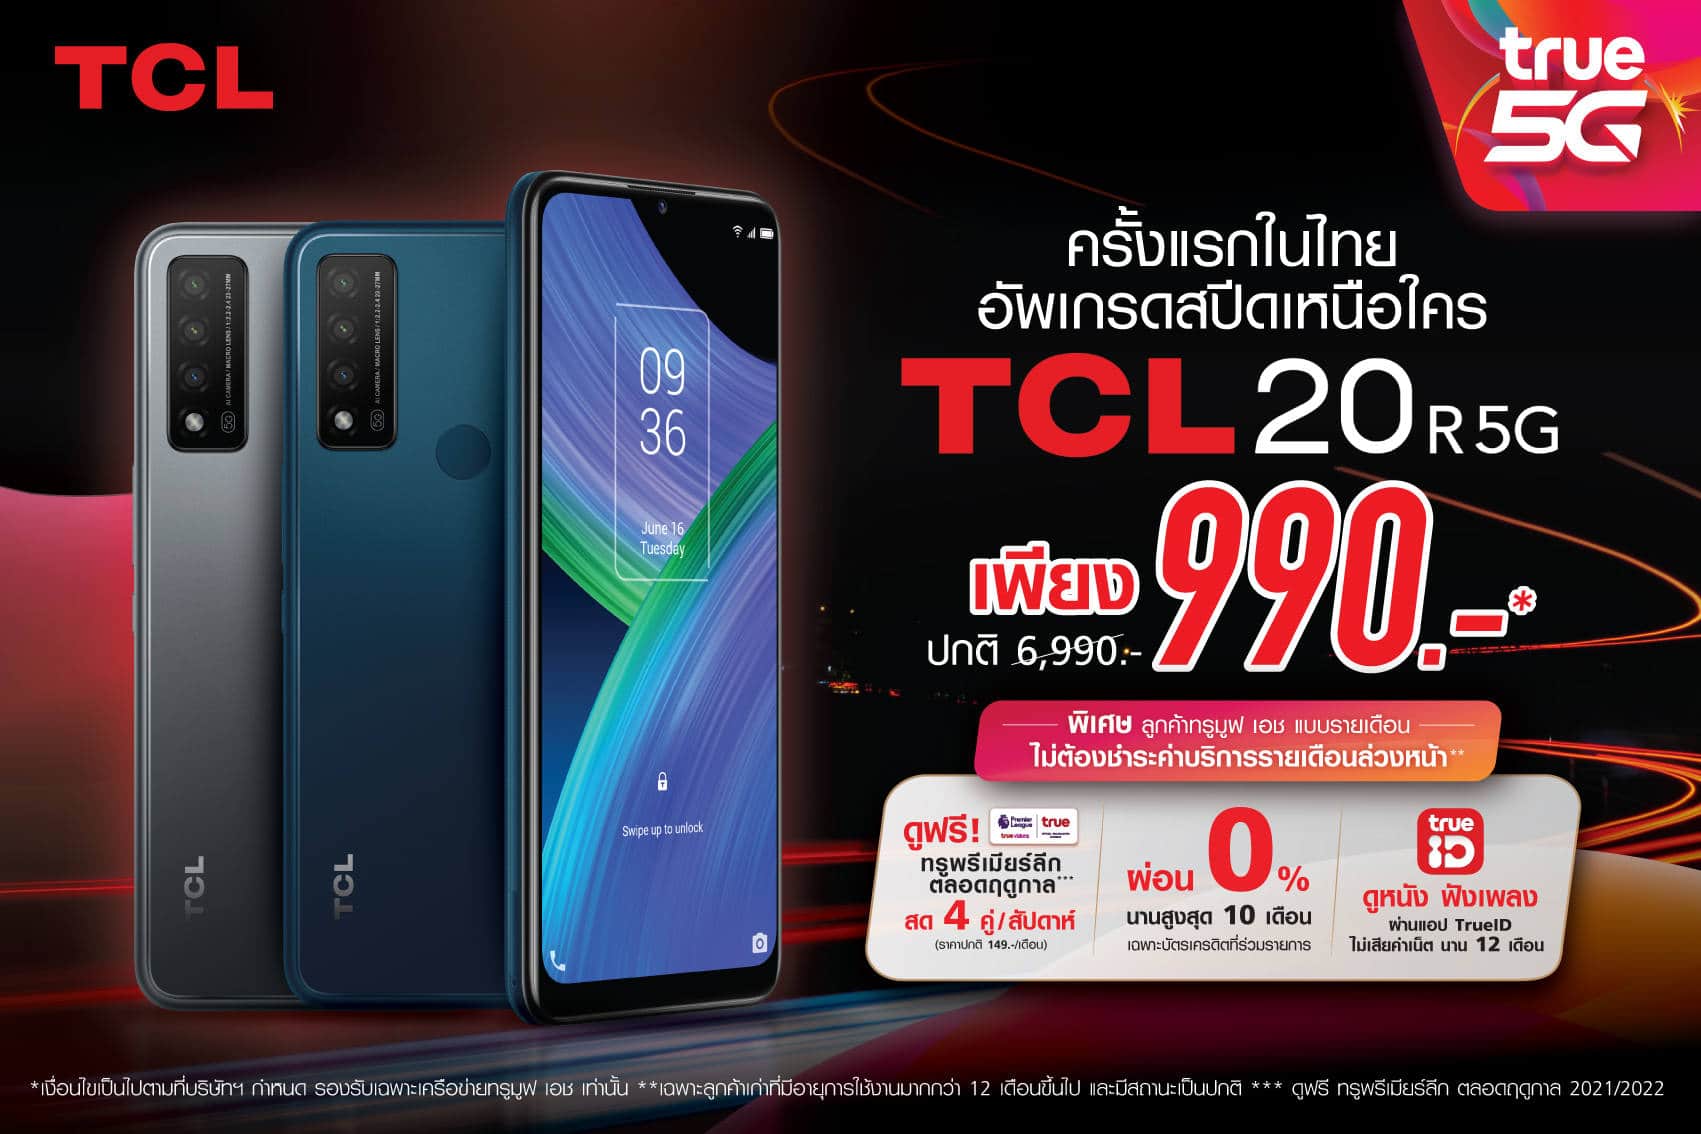 เปิดตัว TCL 20 R 5G สมาร์ทโฟนที่ให้คนไทยเข้าถึงง่ายกว่าเดิม ด้วยราคาเริ่มต้น 990 บาท เฉพาะลูกค้าทรูเท่านั้น 1